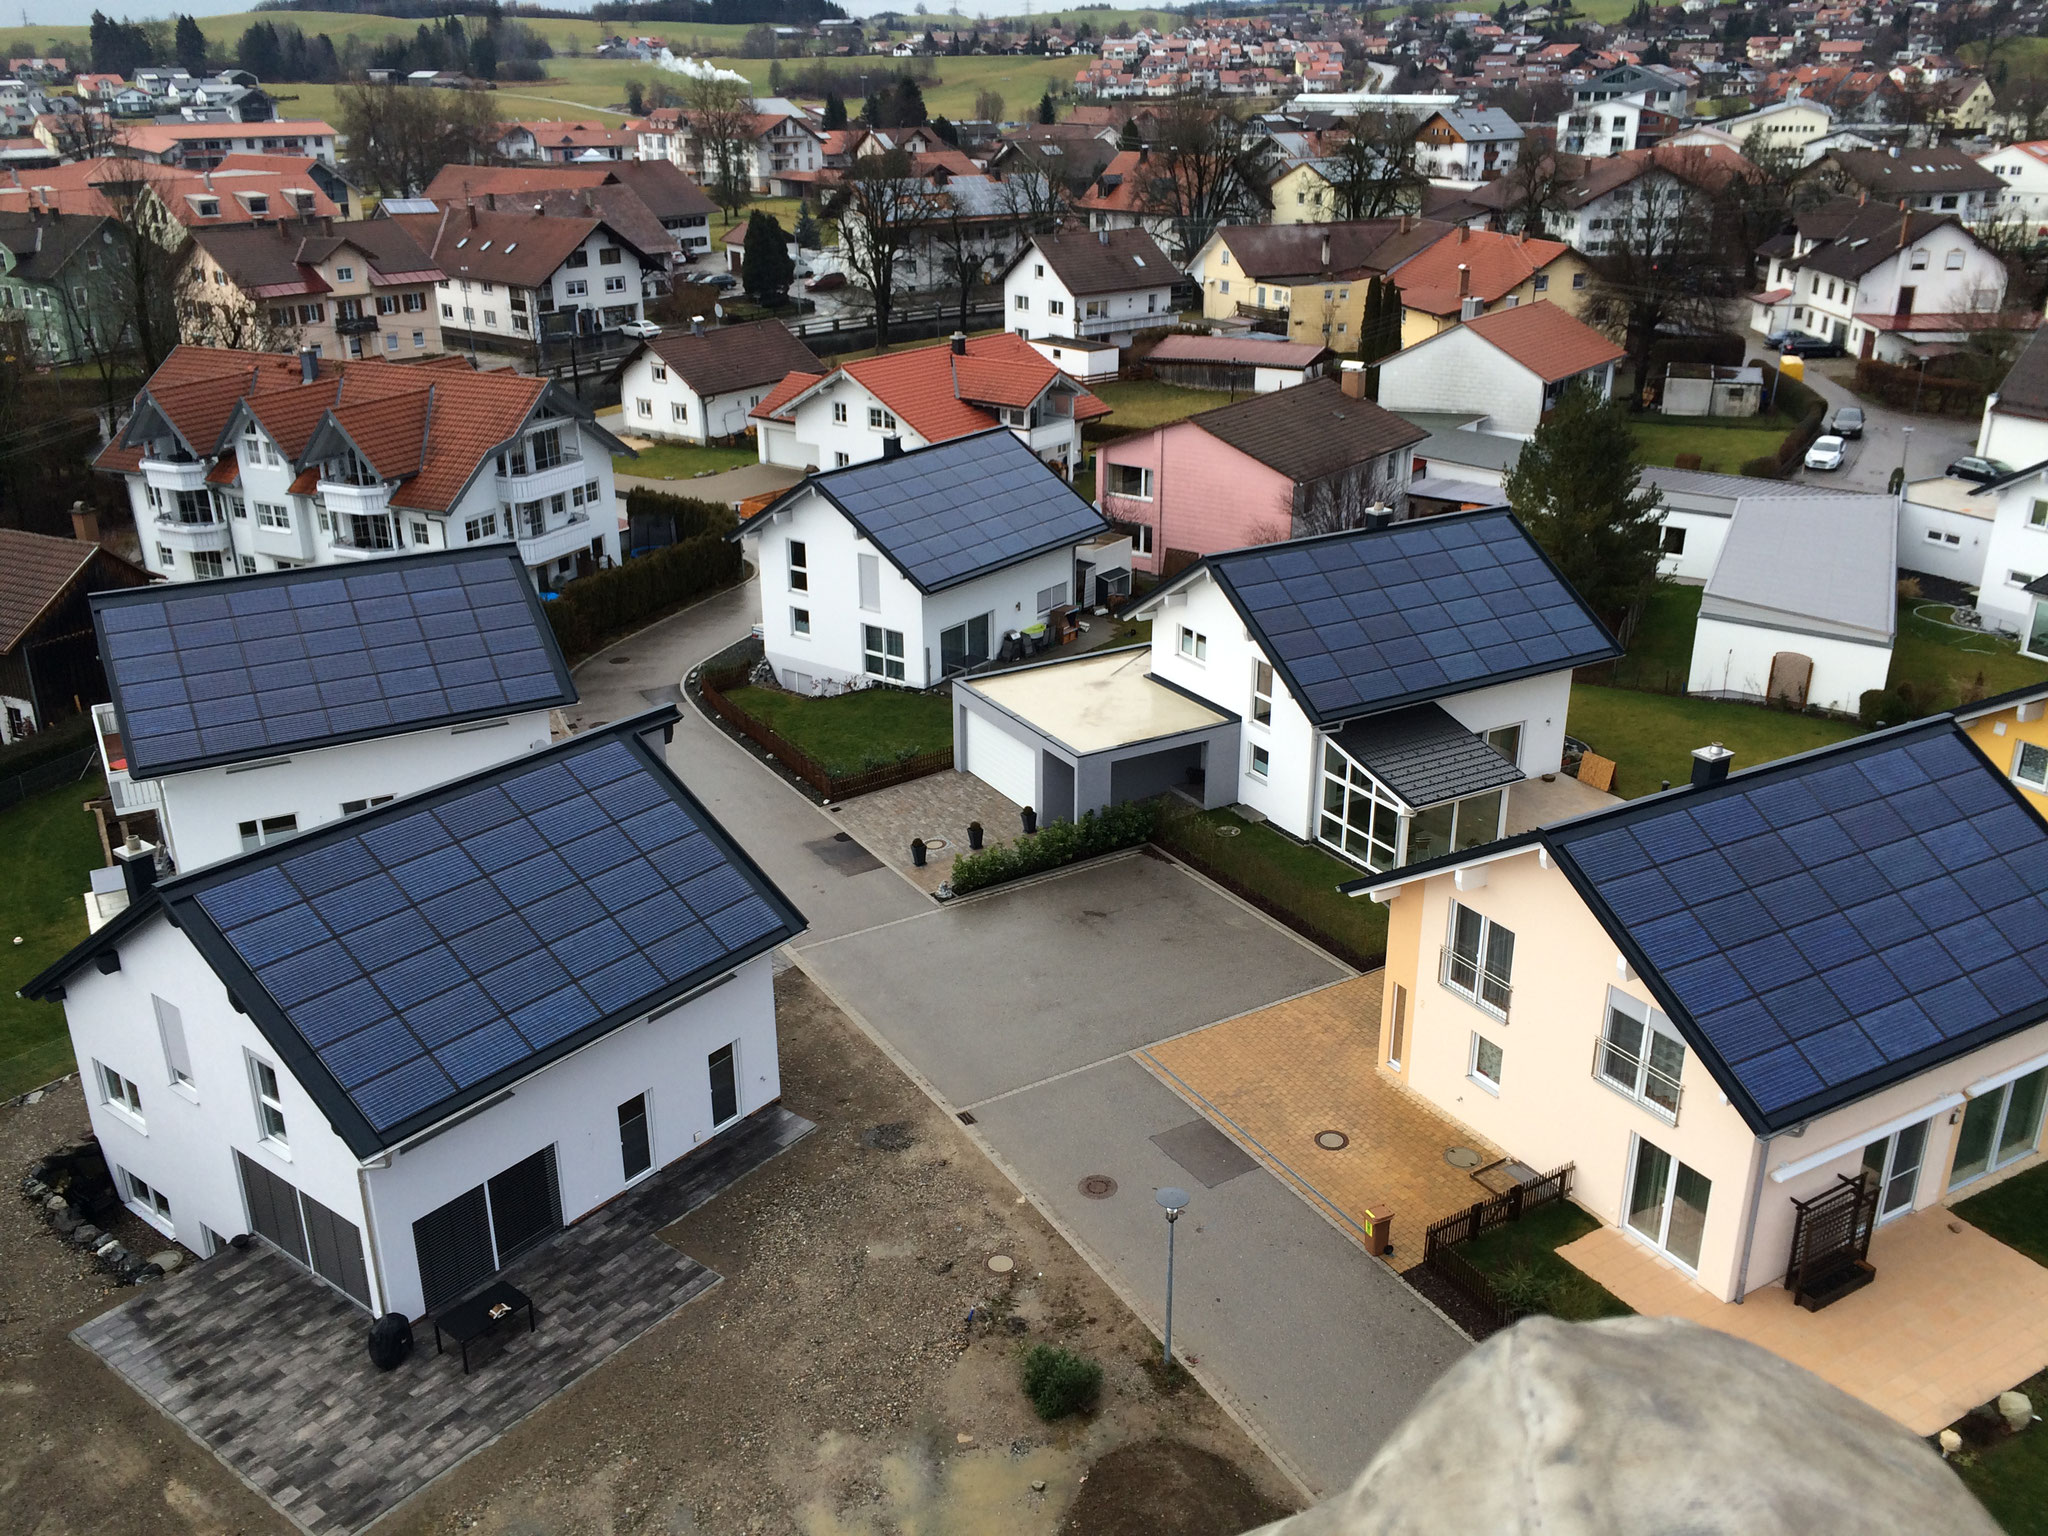 BV: Baugebiet Durach Häuser mit Indach-Photovoltaik